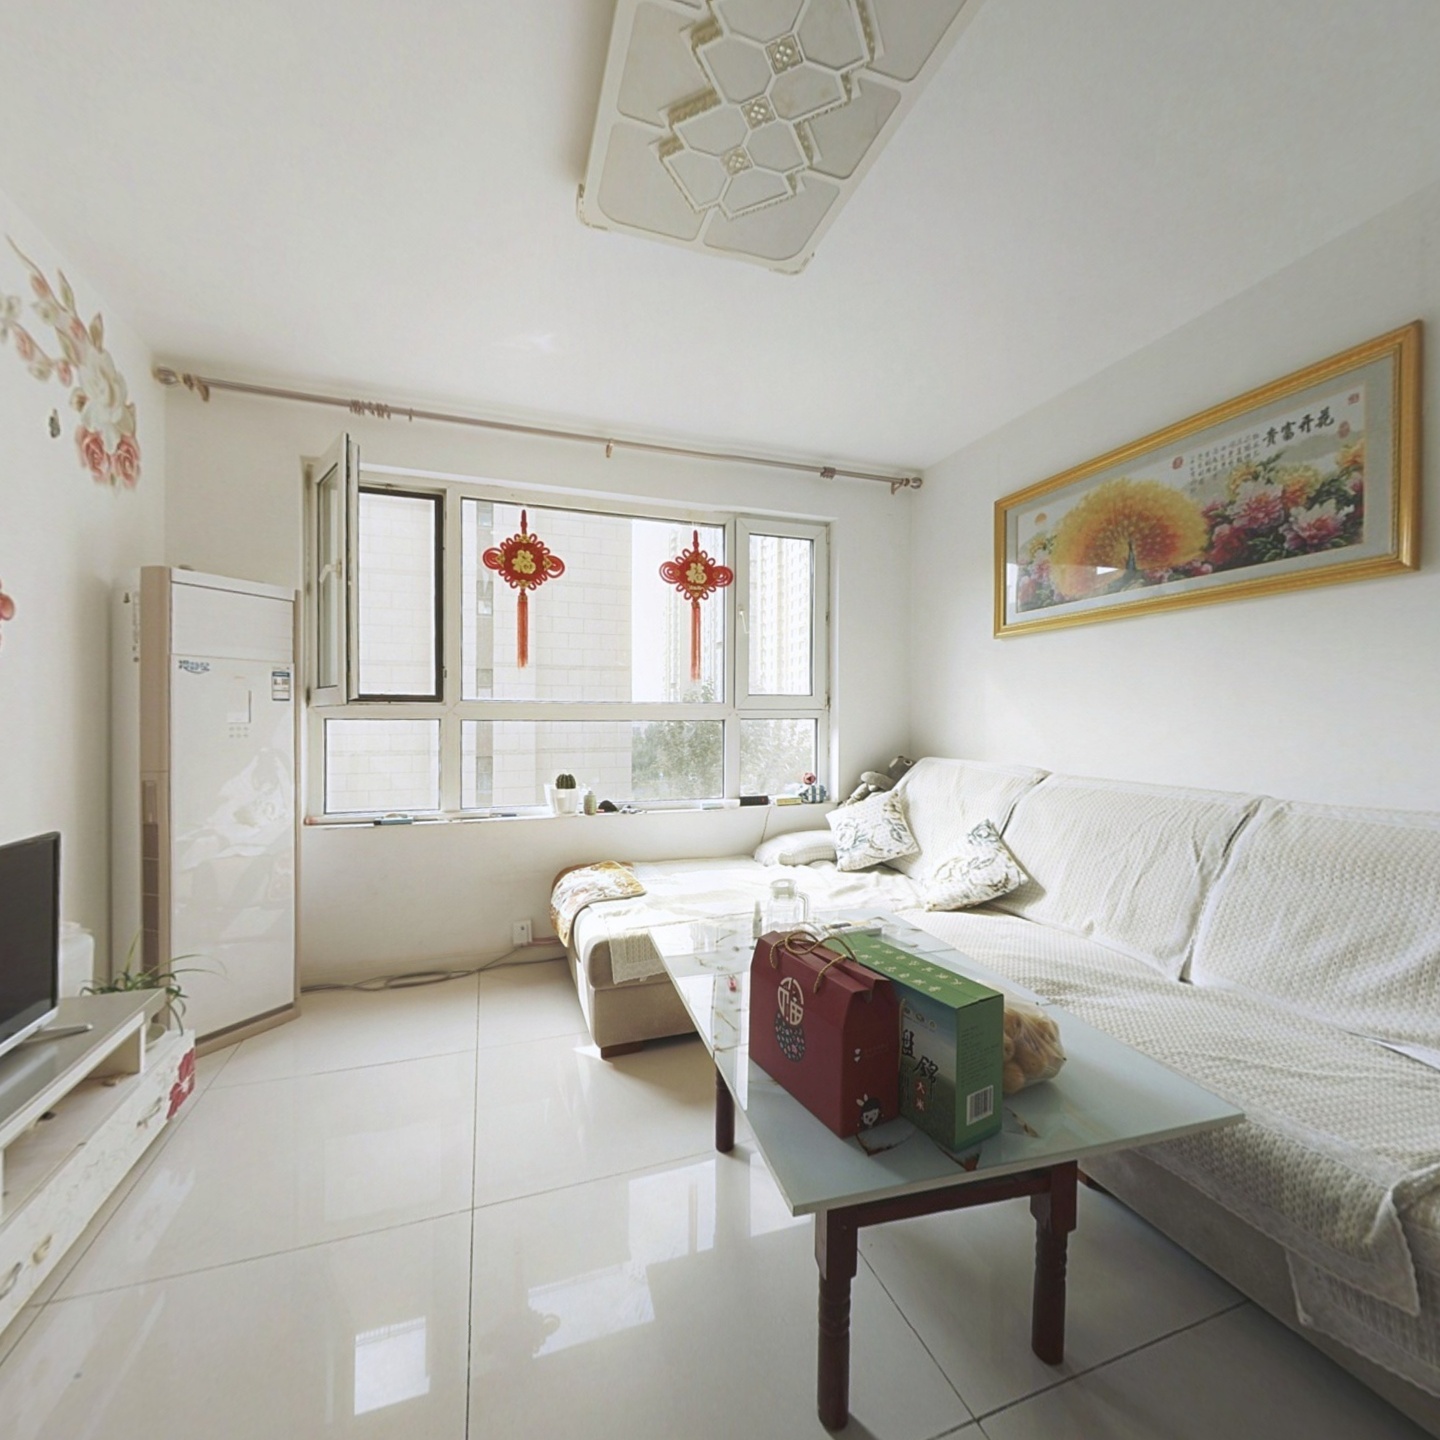 华海 南北标户 适宜居住 可做婚房 小两口买得起的房子